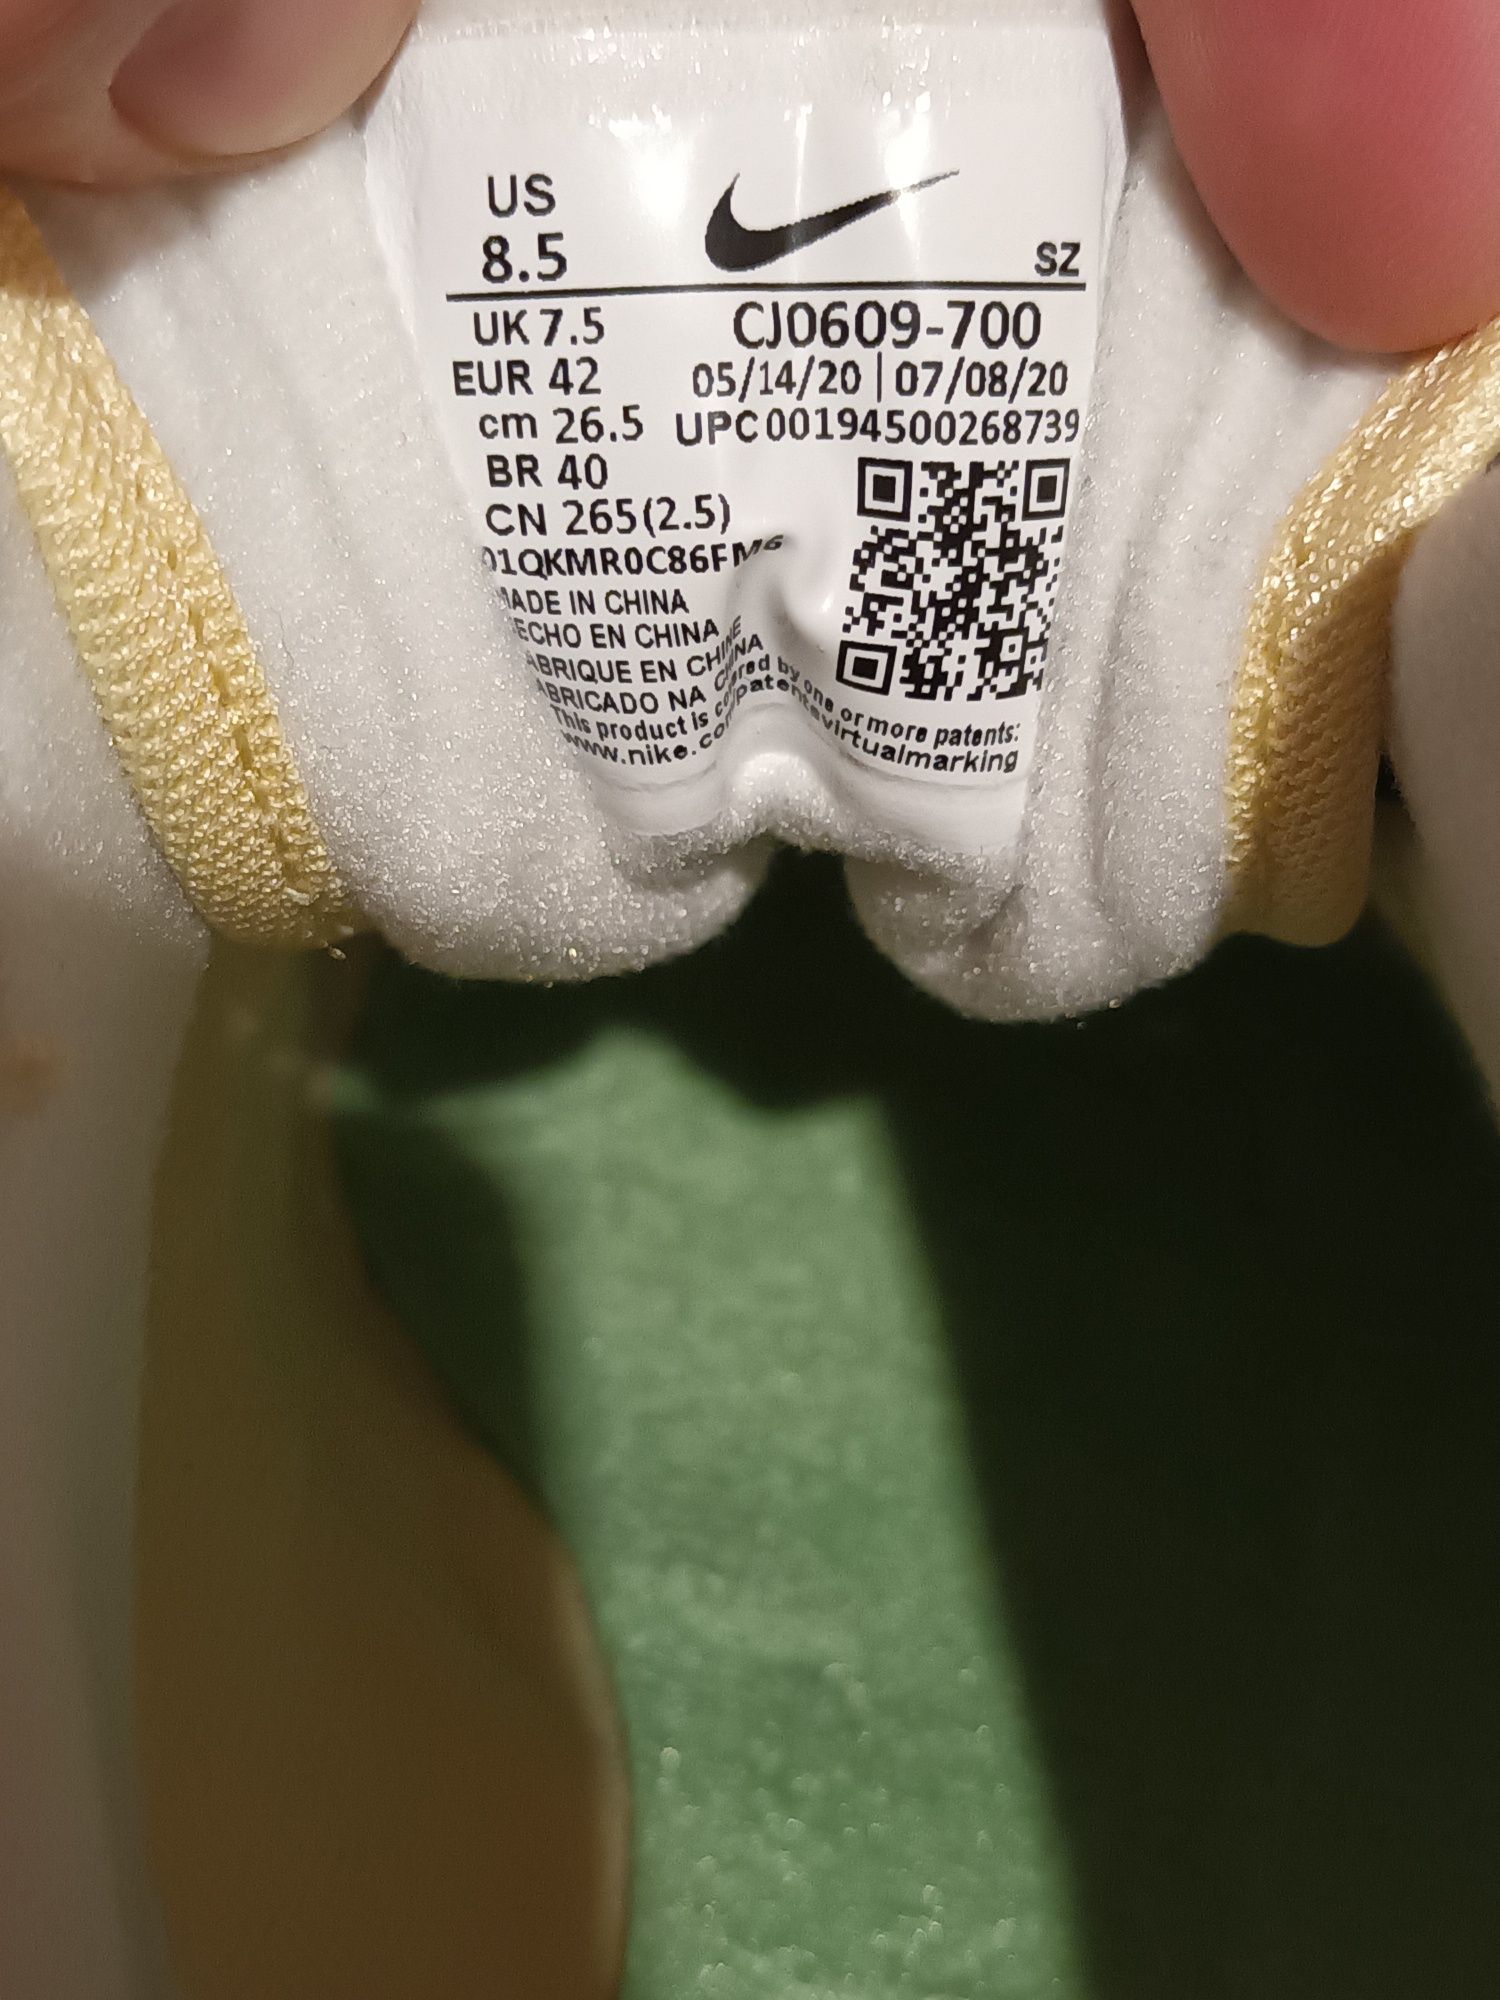 Нови Nike Air Max 1 Premium Lemonade (2020) 42